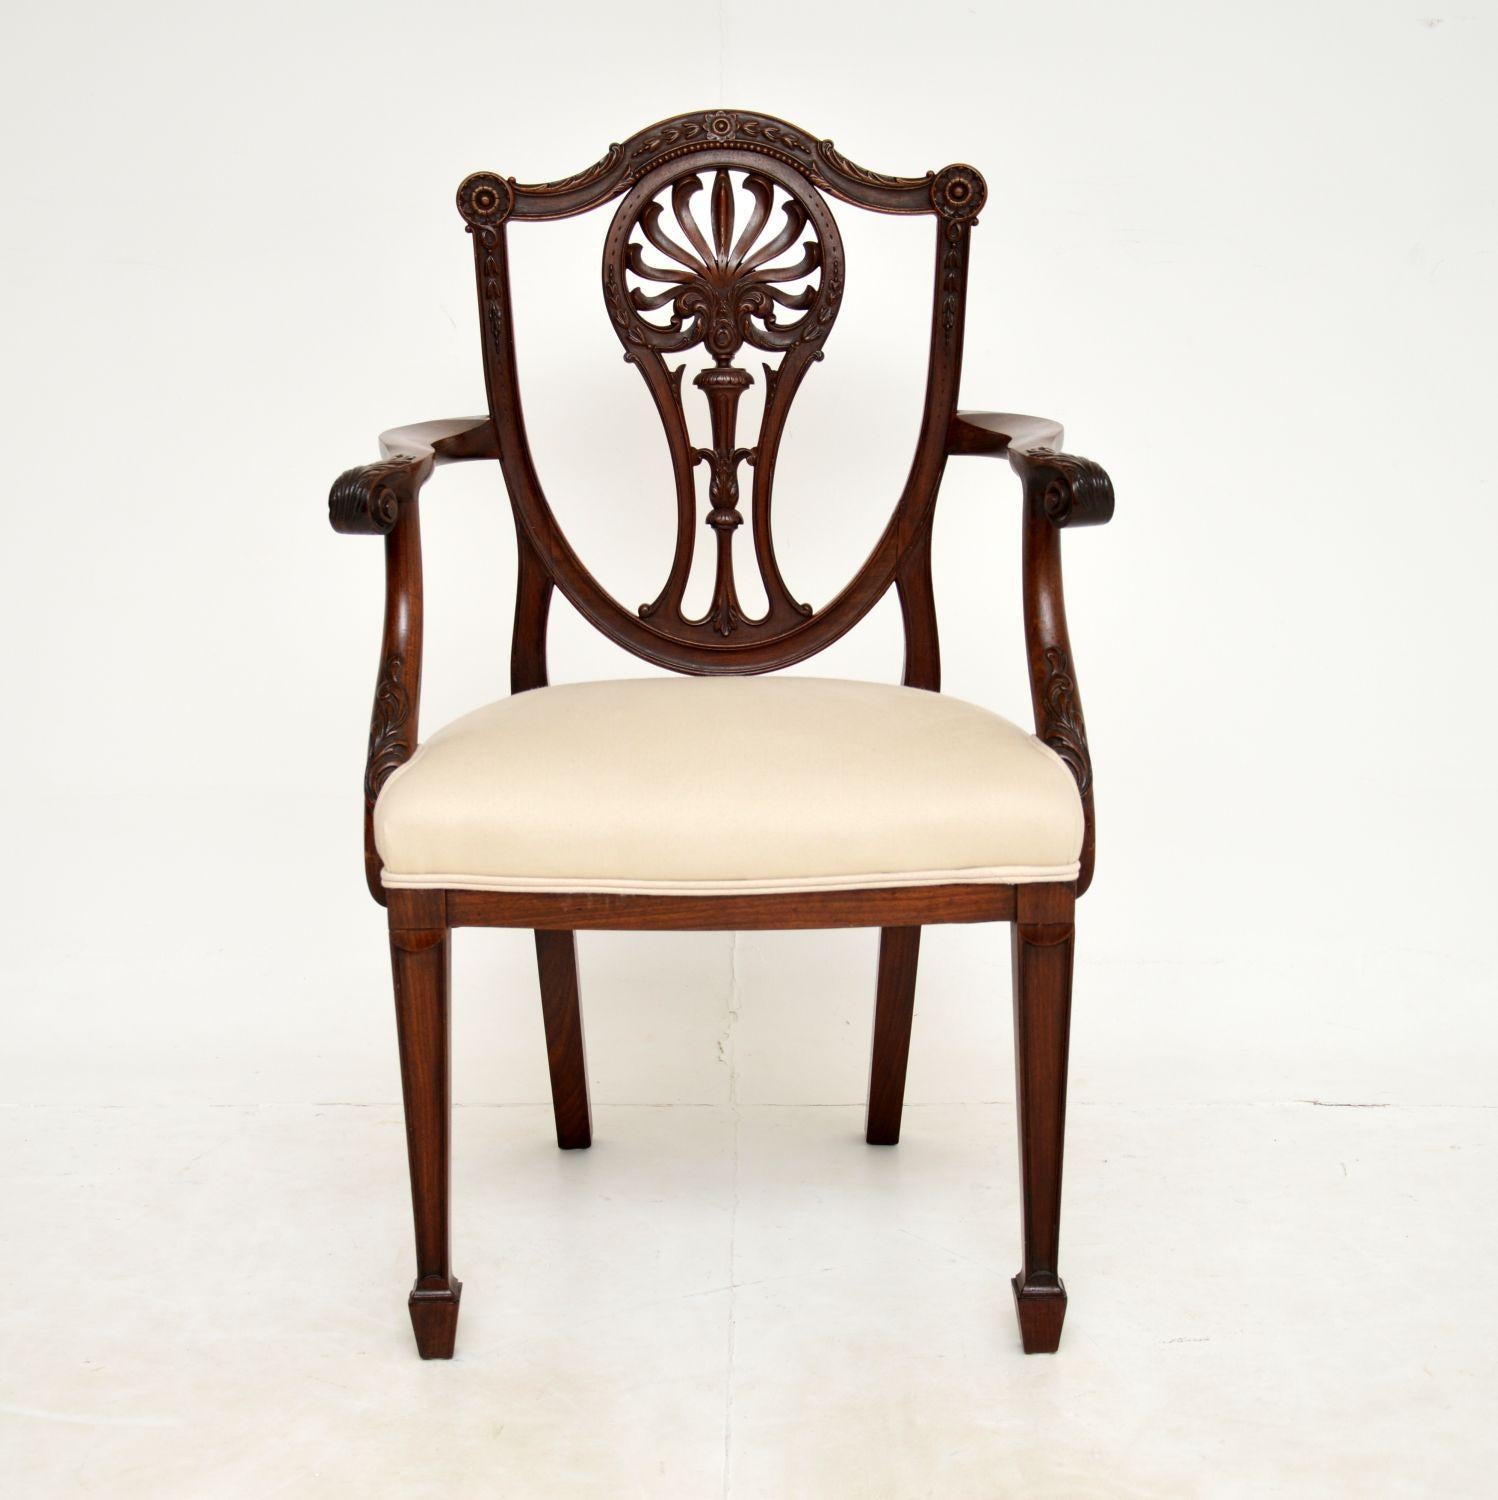 Magnifique chaise de sculpteur à dossier bouclier en bois sculpté de la fin du XIXe siècle, de style George III. Elle a été fabriquée en Angleterre et date des années 1880-90.

Il est d'une très grande qualité et présente de superbes sculptures